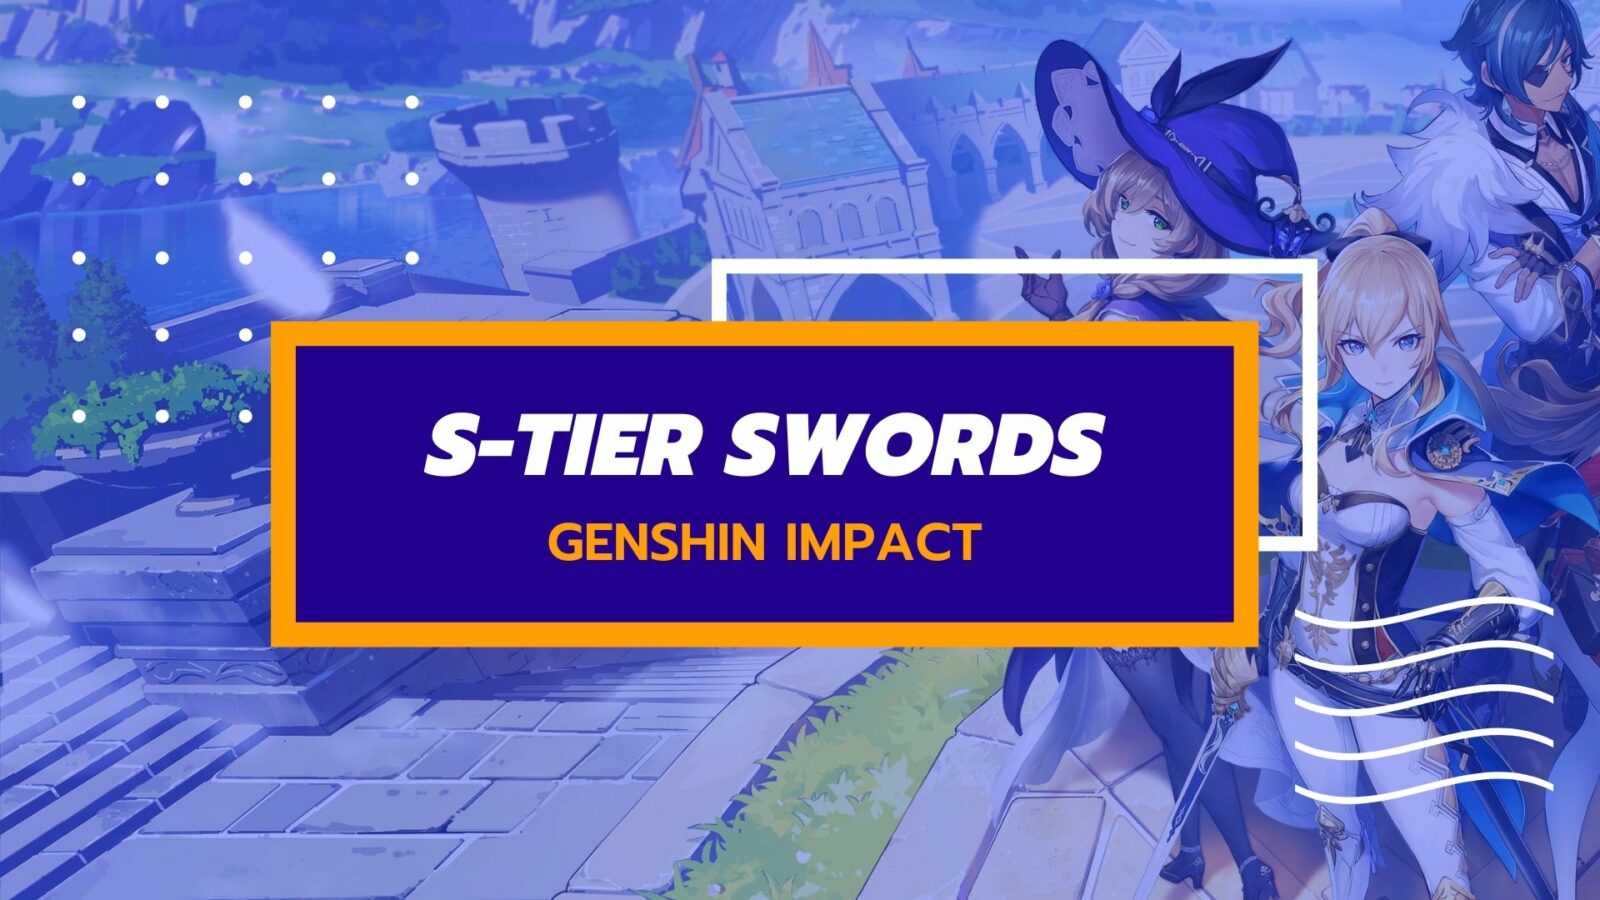 Elenco dei livelli delle armi di Genshin Impact S